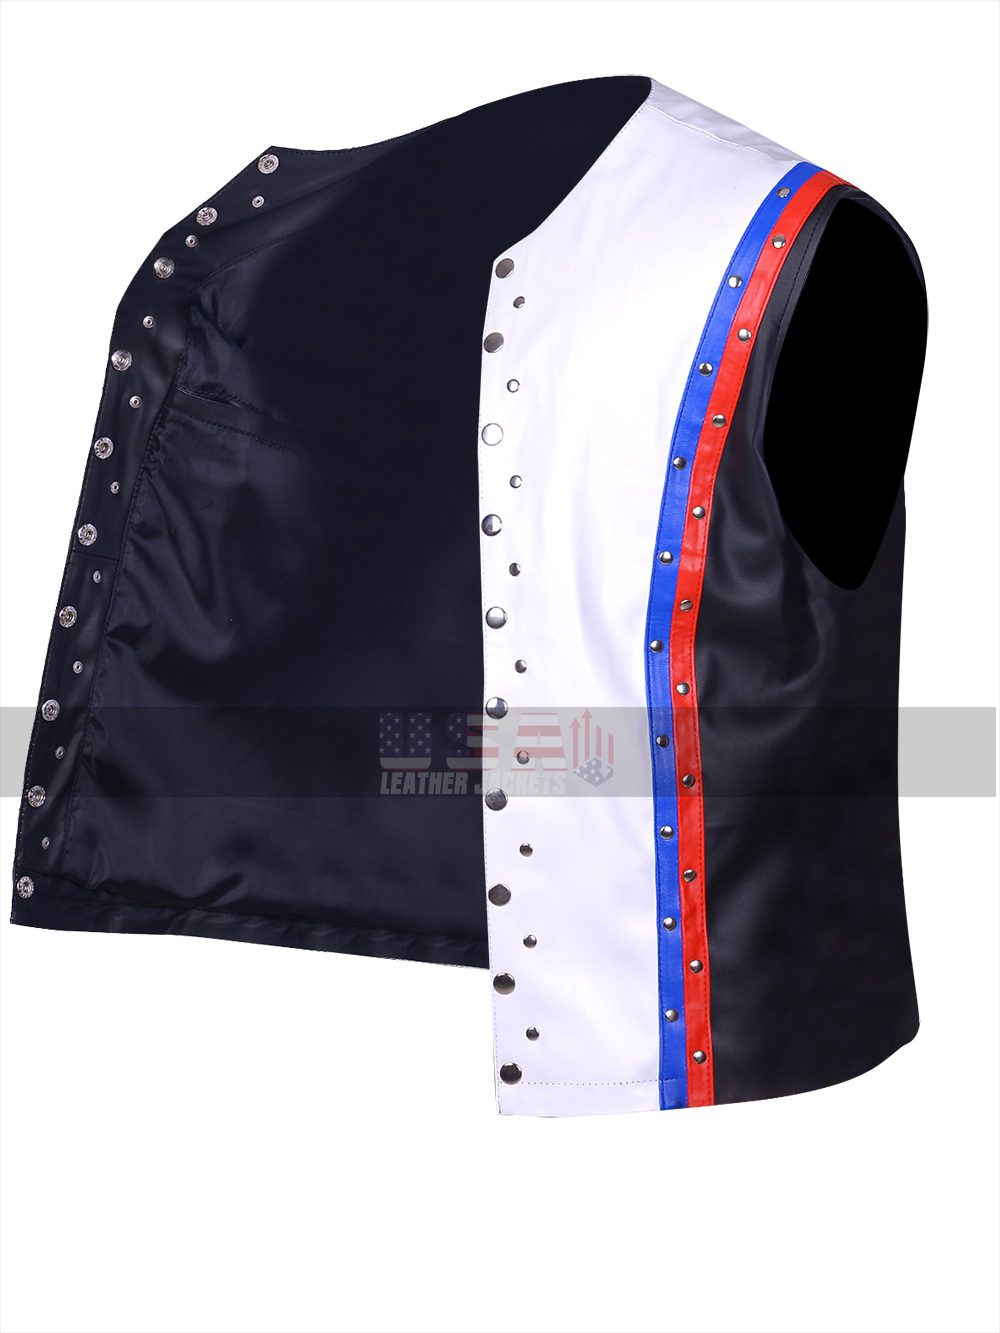 A.J. Styles Allen Neal Jones White Leather Vest